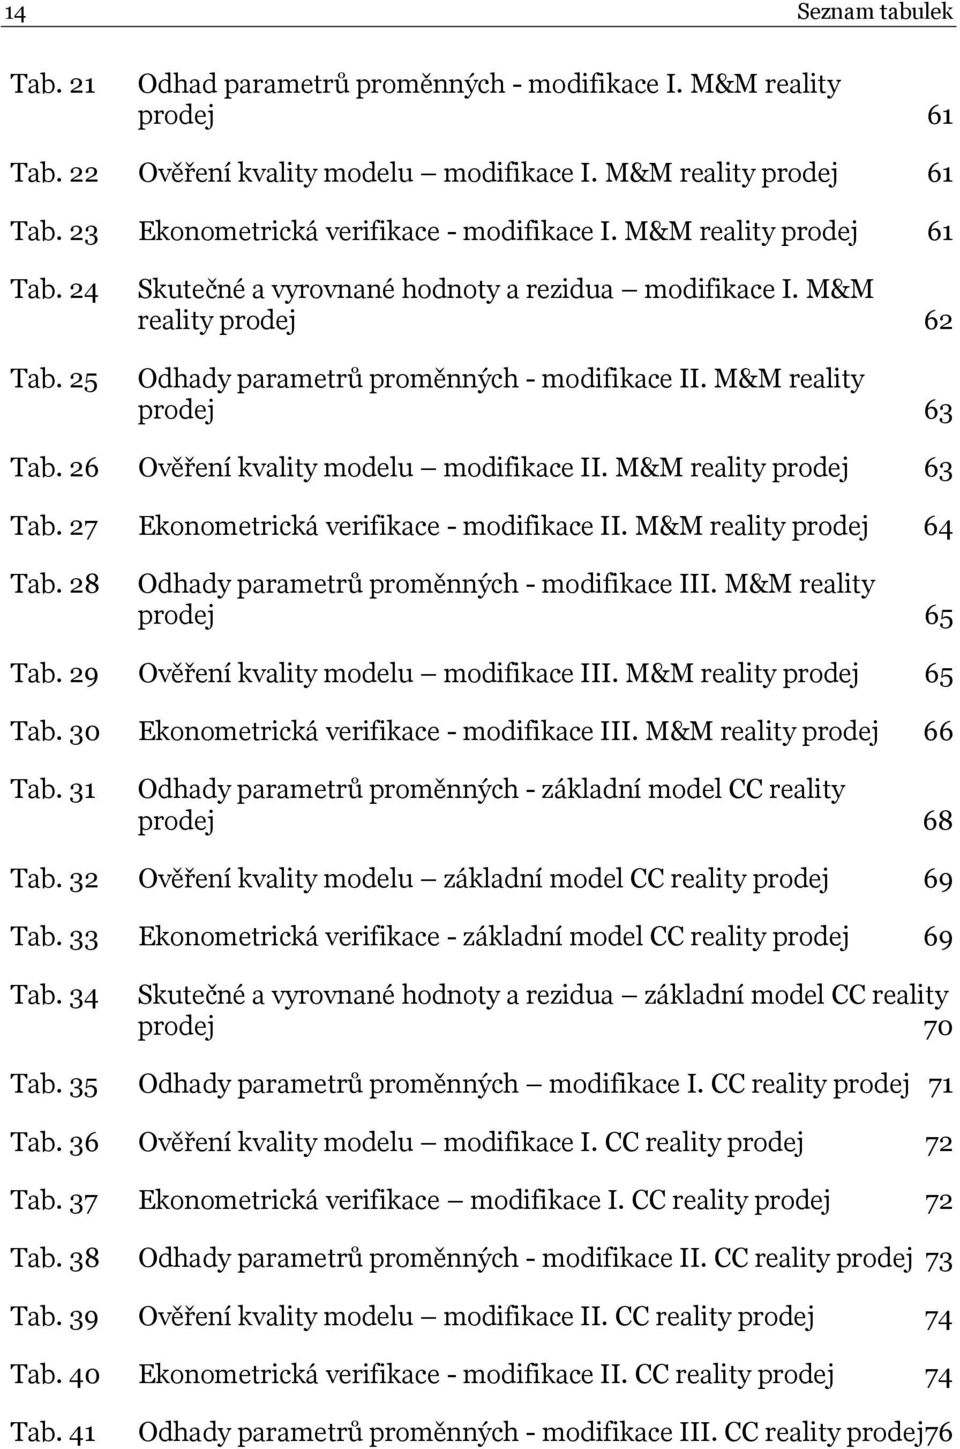 26 Ověření kvality modelu modifikace II. M&M reality prodej 63 Tab. 27 Ekonometrická verifikace - modifikace II. M&M reality prodej 64 Tab. 28 Odhady parametrů proměnných - modifikace III.